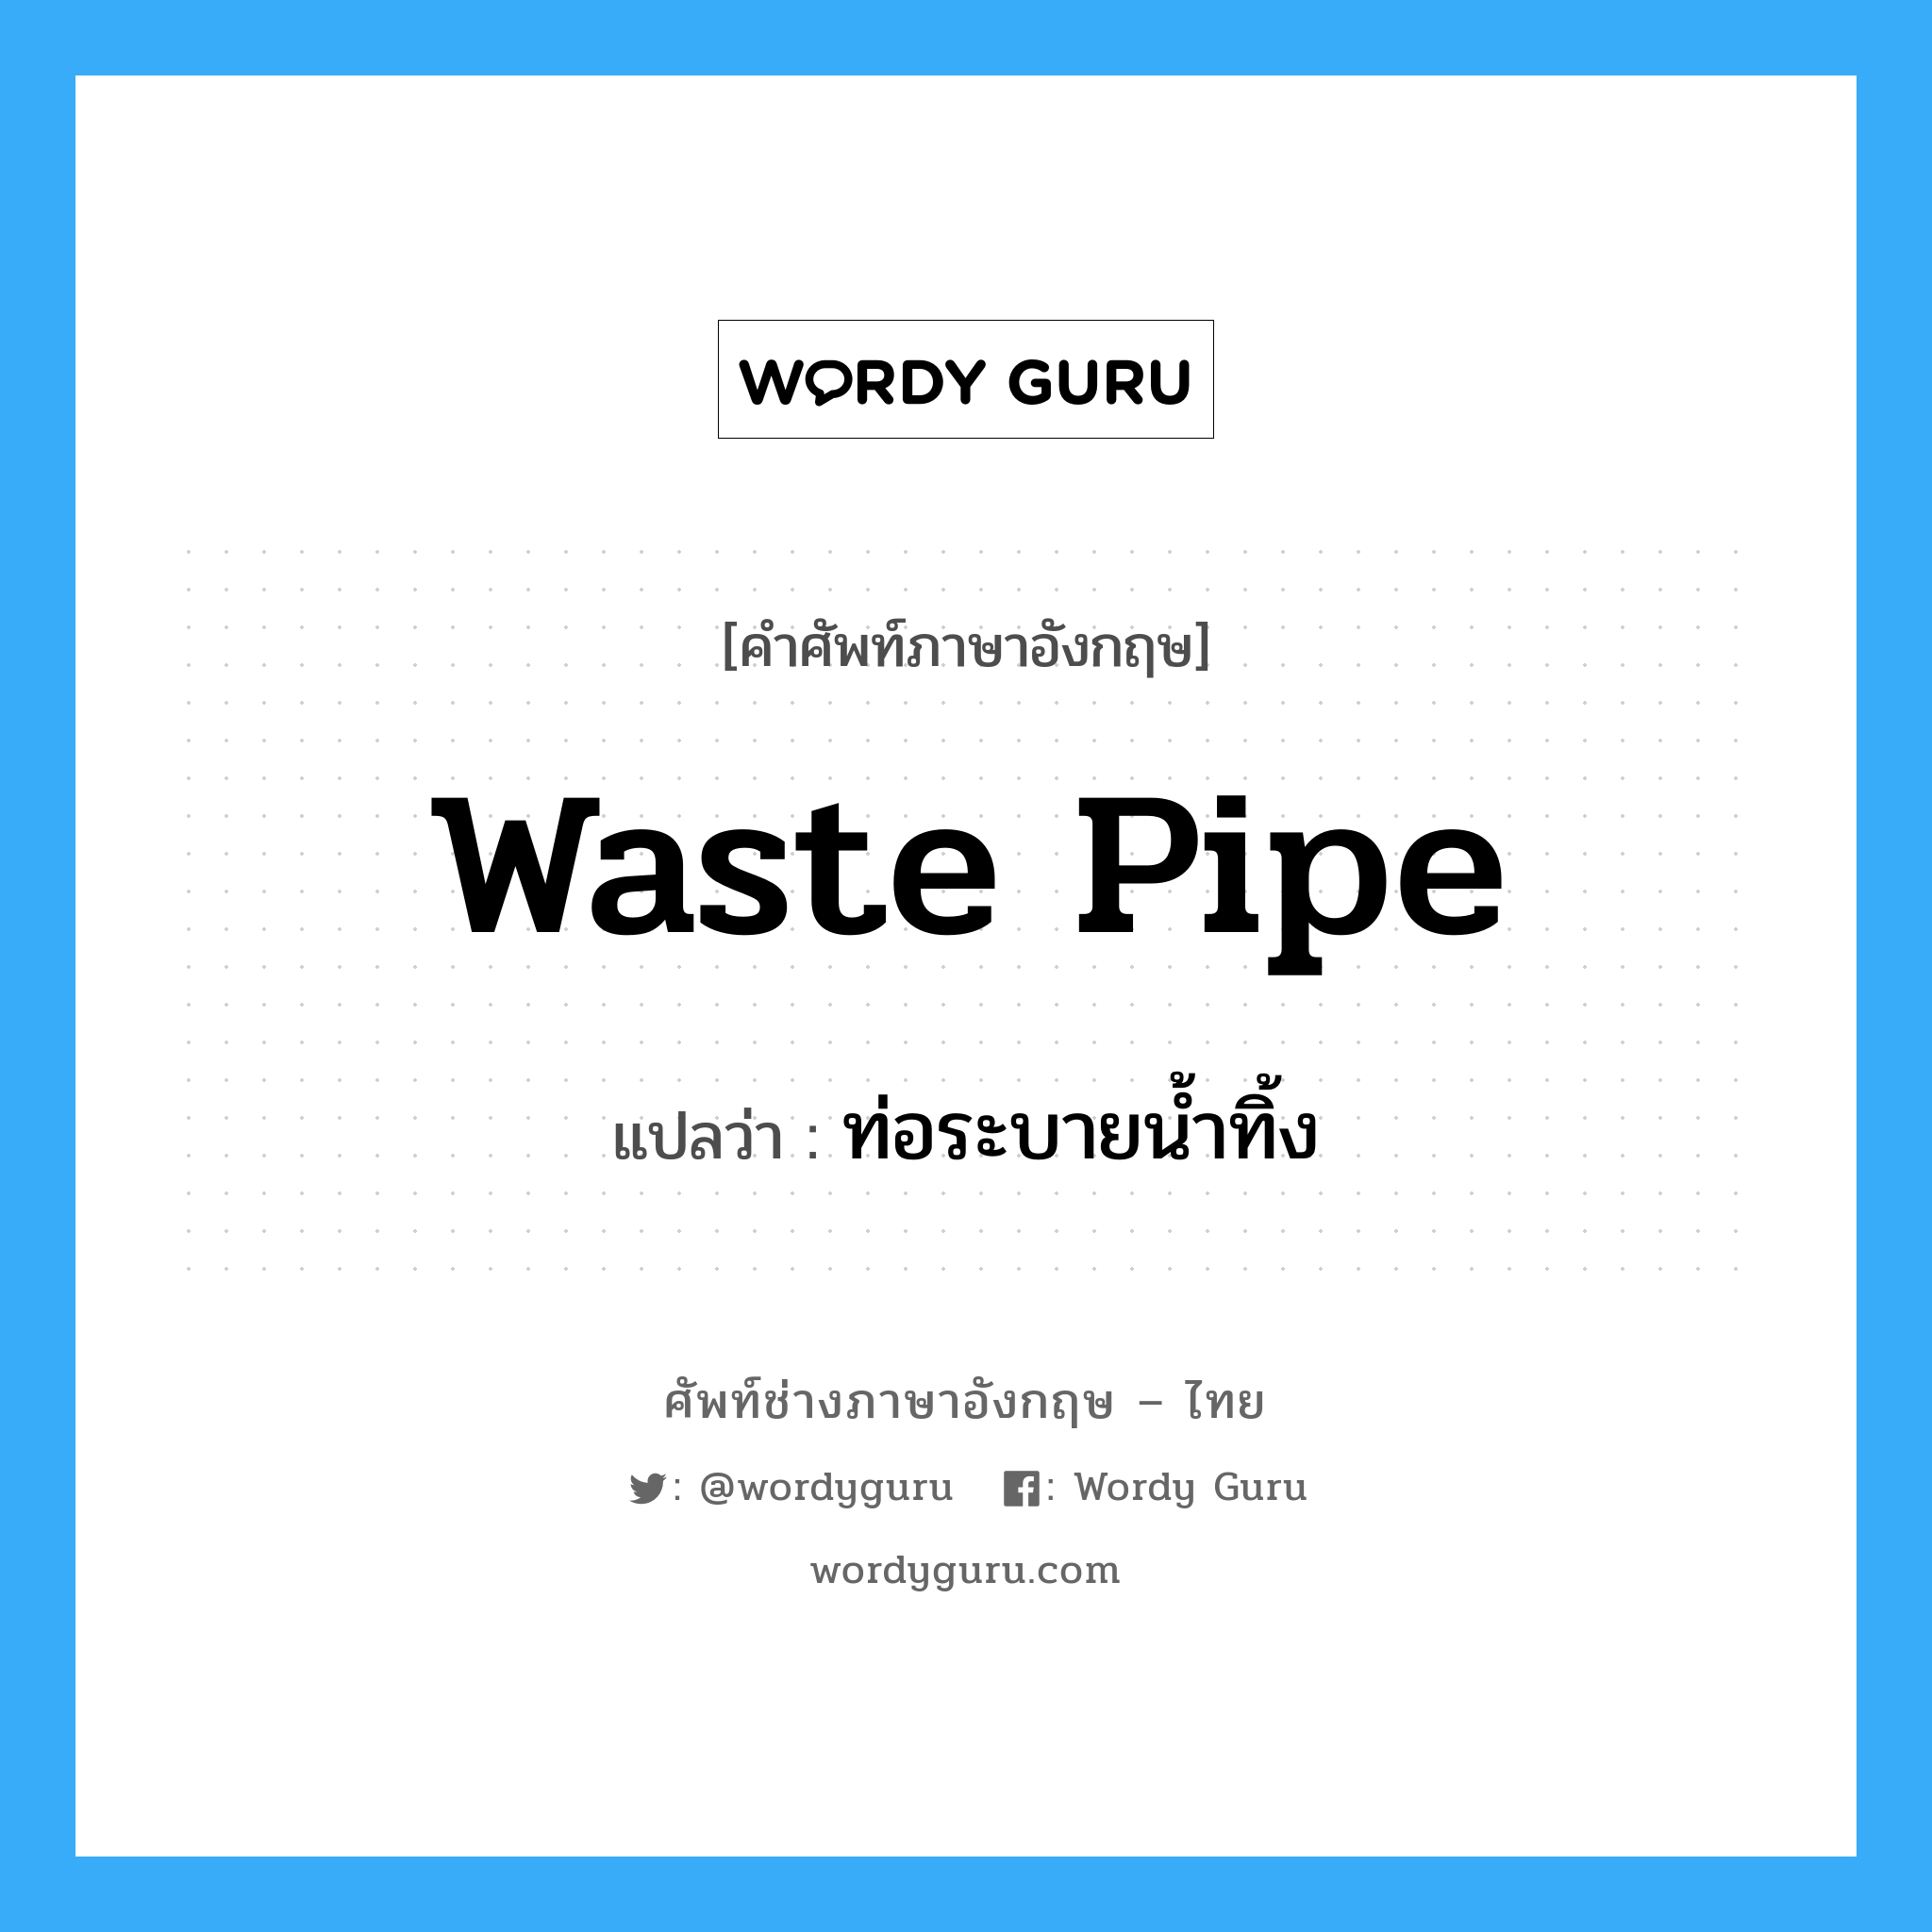 waste pipe แปลว่า?, คำศัพท์ช่างภาษาอังกฤษ - ไทย waste pipe คำศัพท์ภาษาอังกฤษ waste pipe แปลว่า ท่อระบายน้ำทิ้ง